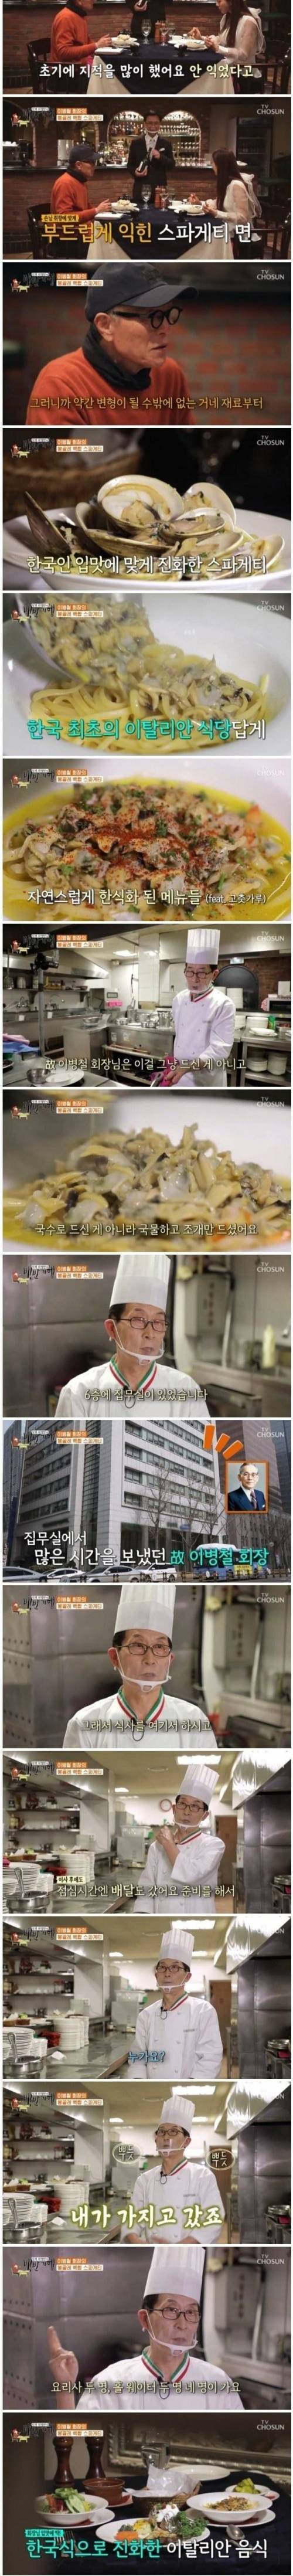 [스압] 한국 최초의 이탈리안 식당.jpg